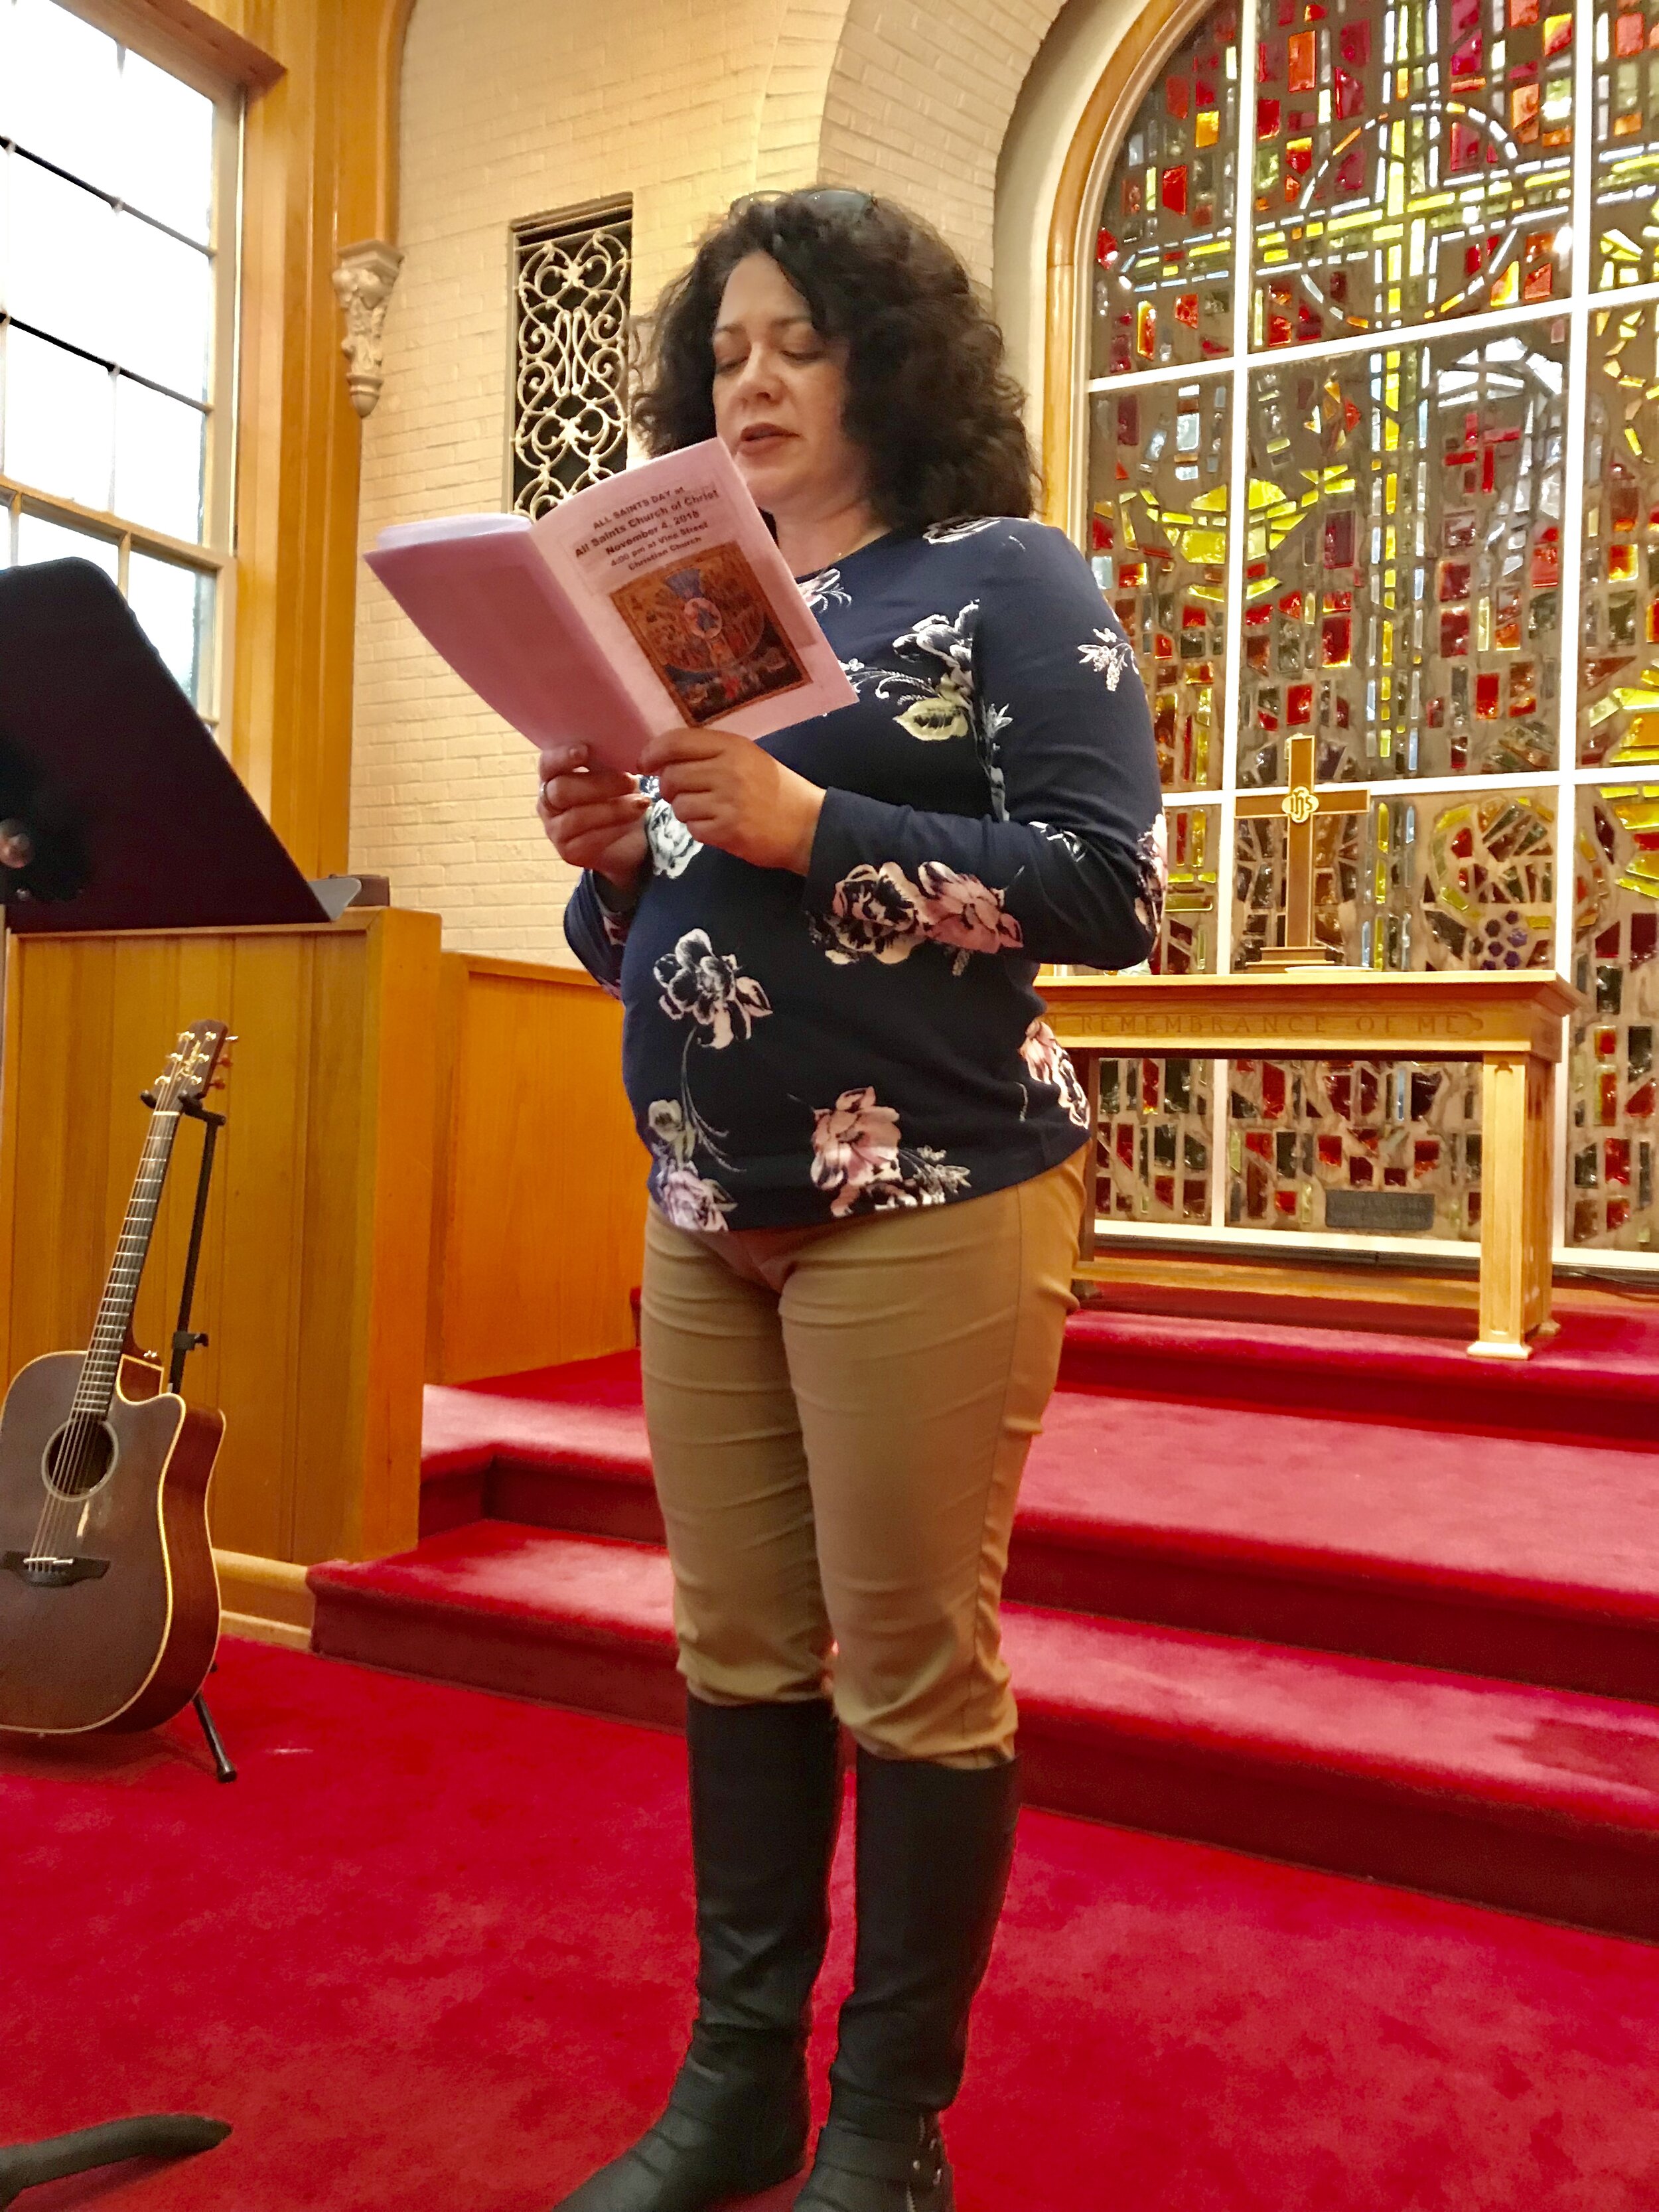  Jacquie Gonzalez reading Scripture. 